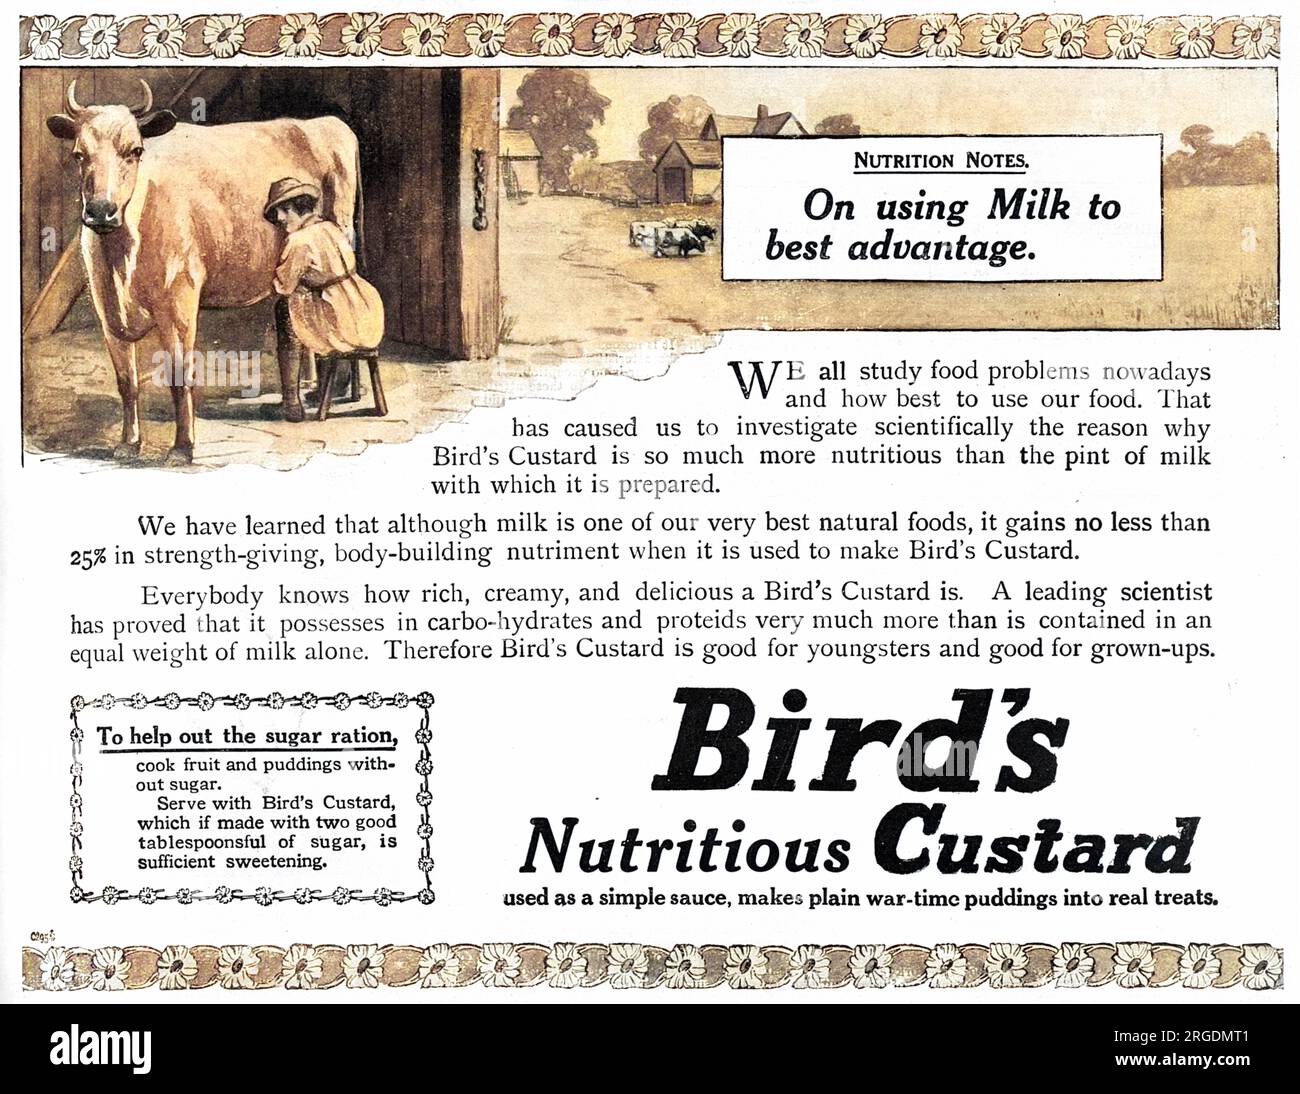 Publicité pour Bird's 'nutritive' Custard, avec une illustration d'une fille de la terre traire une vache et des conseils sur la nutrition suggérant qu'il utilise le lait au mieux et pour aider à la ration de sucre, servir la crème Bird's qui comprend deux bonnes cuillères à soupe de sucre. Banque D'Images